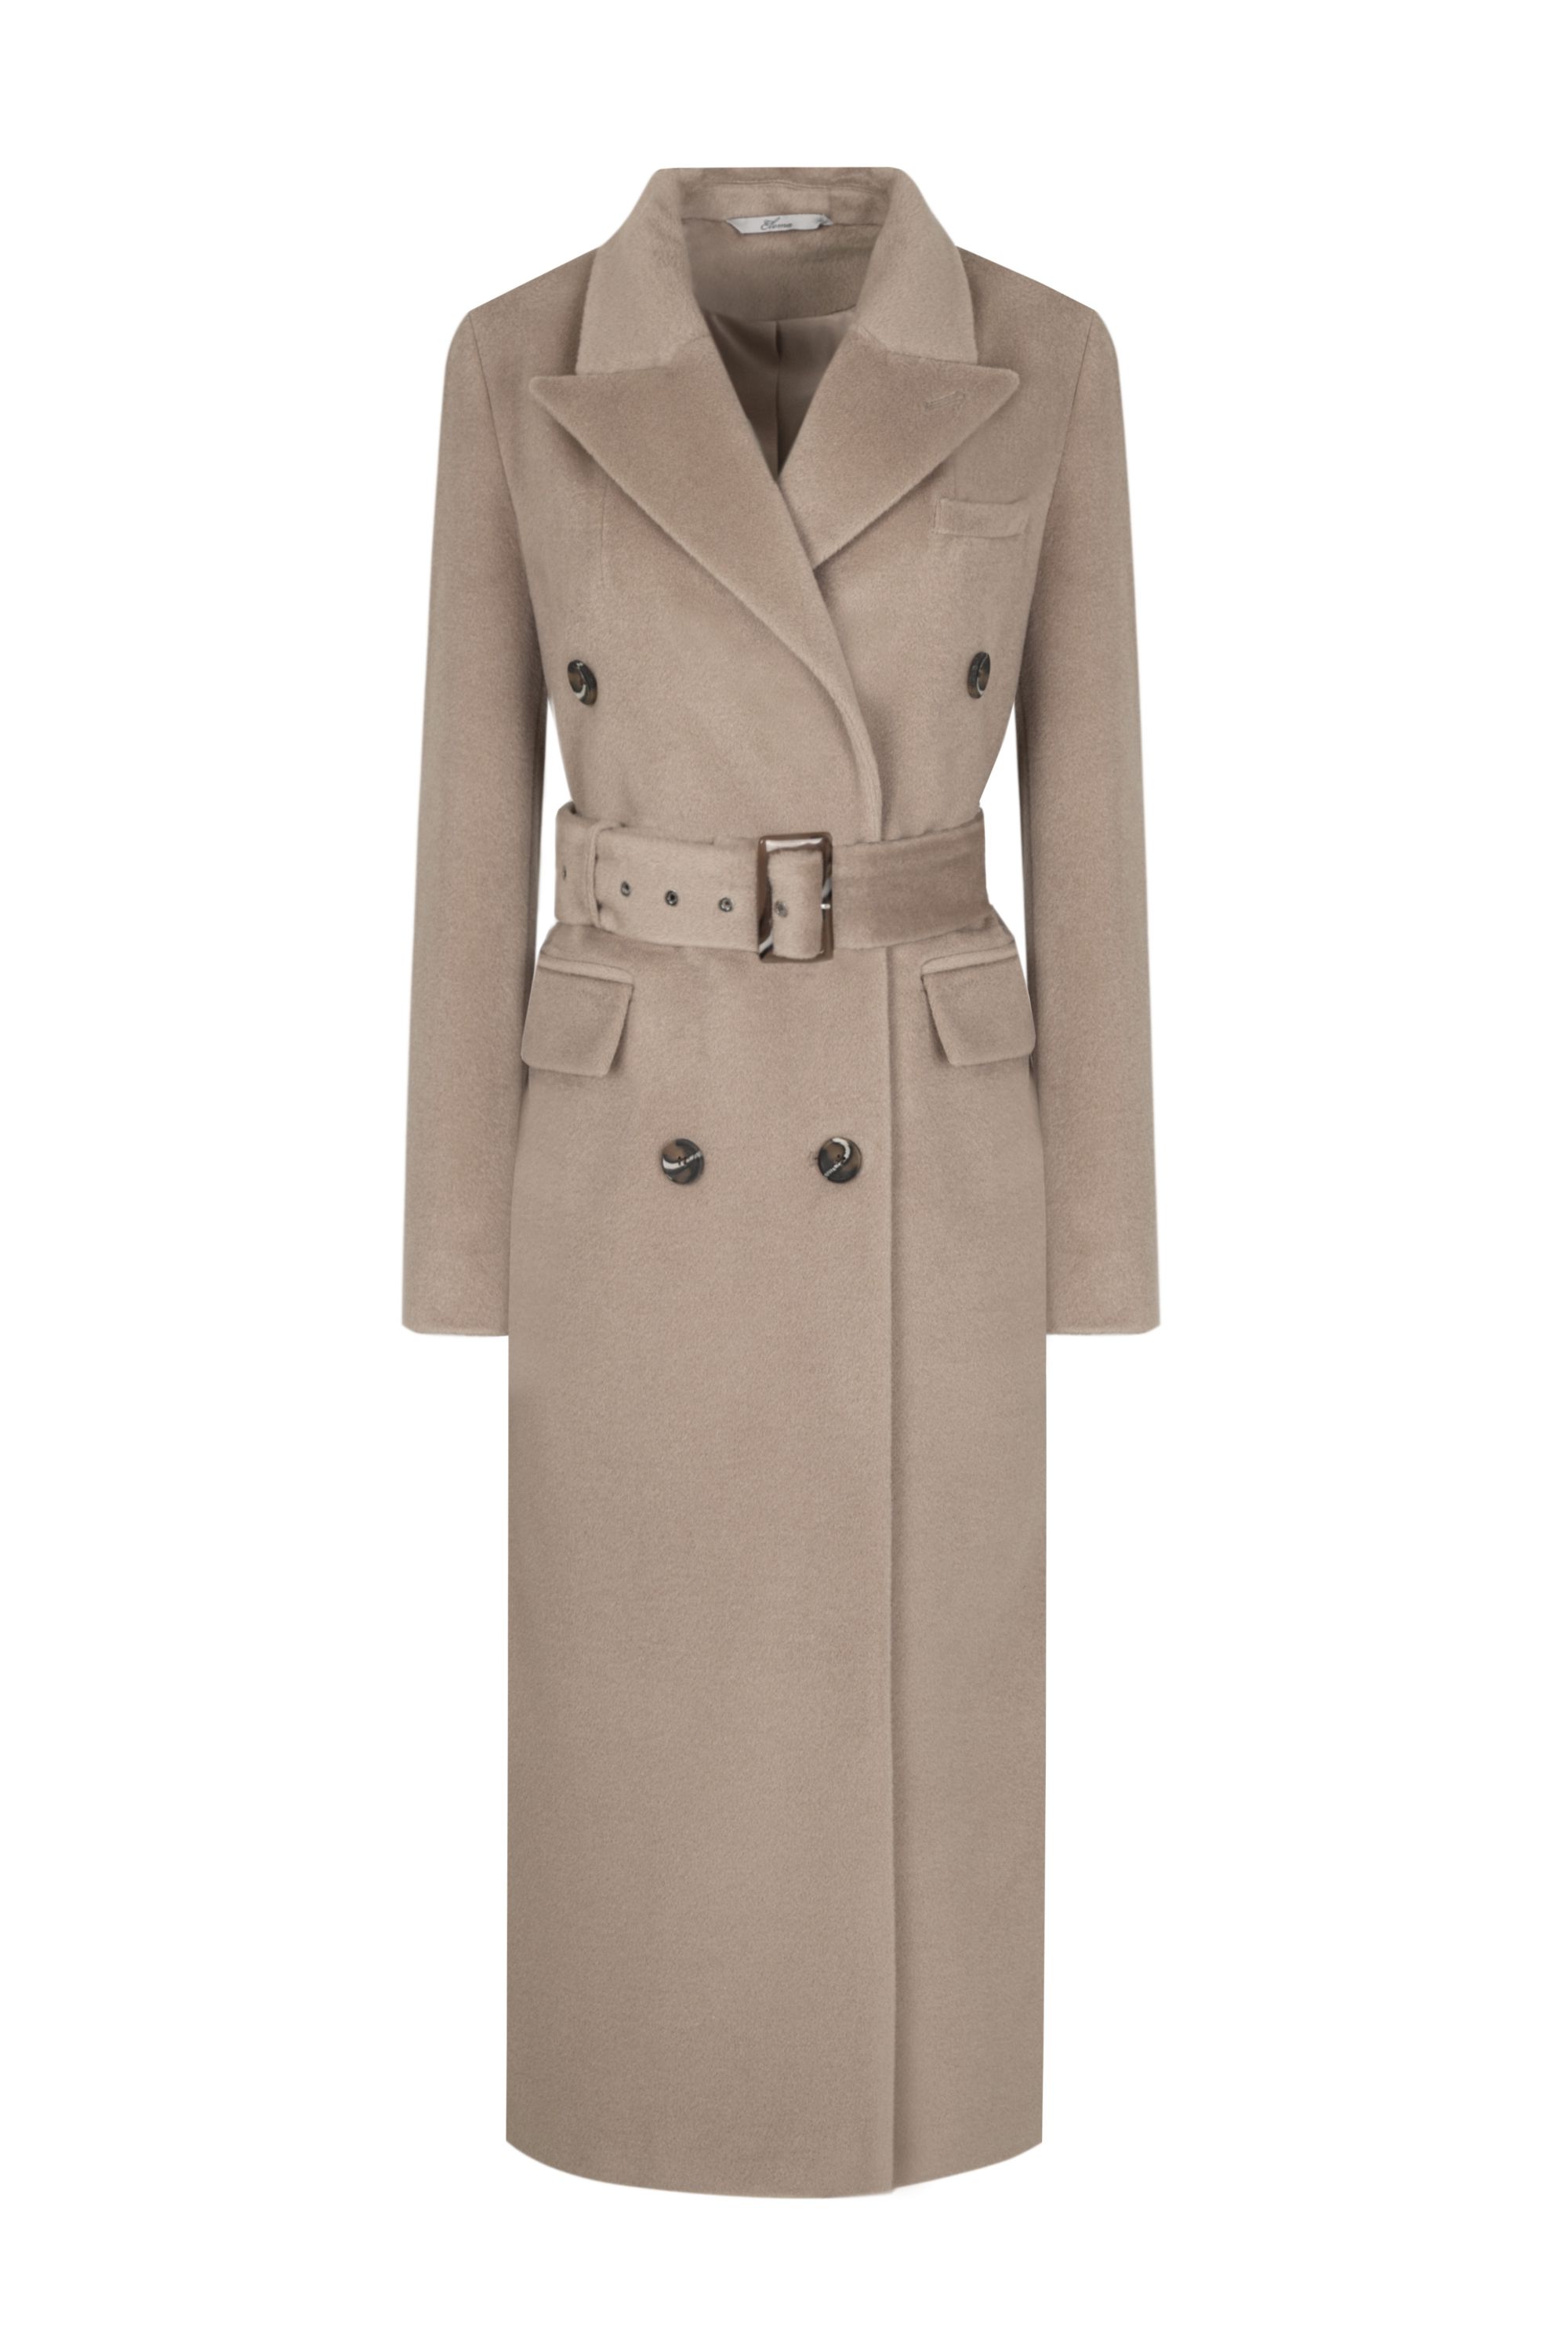 Пальто женское демисезонное 1-12633-1. Фото 1.